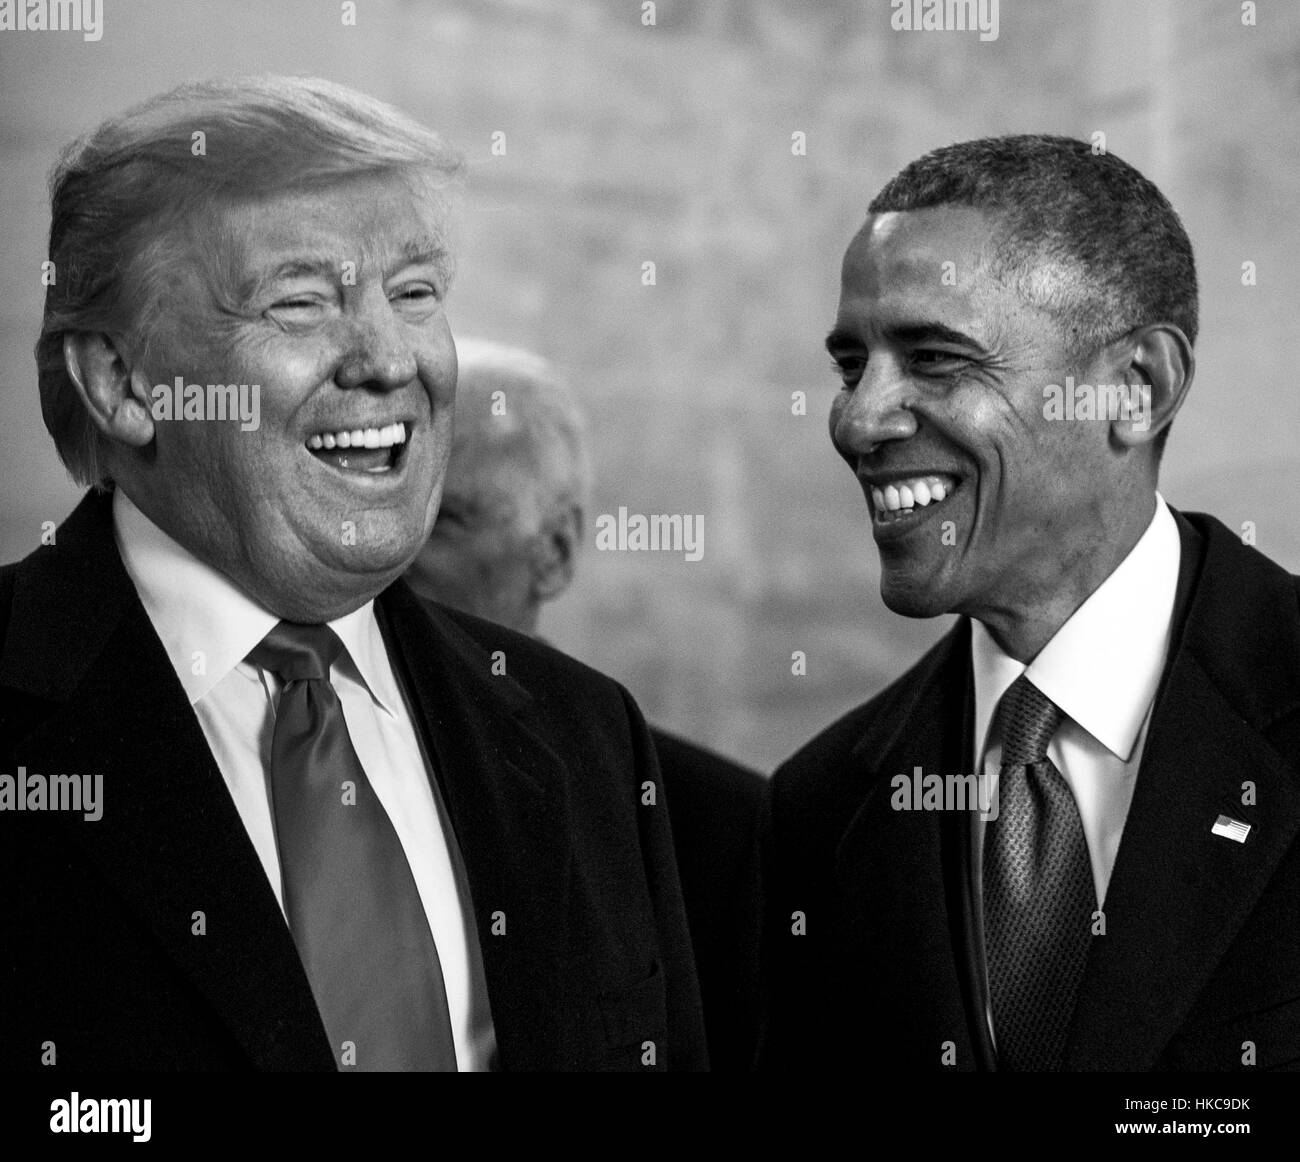 US-Präsident Donald Trump und ehemaliger Präsident Barack Obama teilen einen lachen, als sie in Richtung Osten Schritte auf dem US-Kapitol für die Abschiedszeremonie während der 58. Presidential Inauguration 20. Januar 2017 in Washington, DC Fuß. Stockfoto